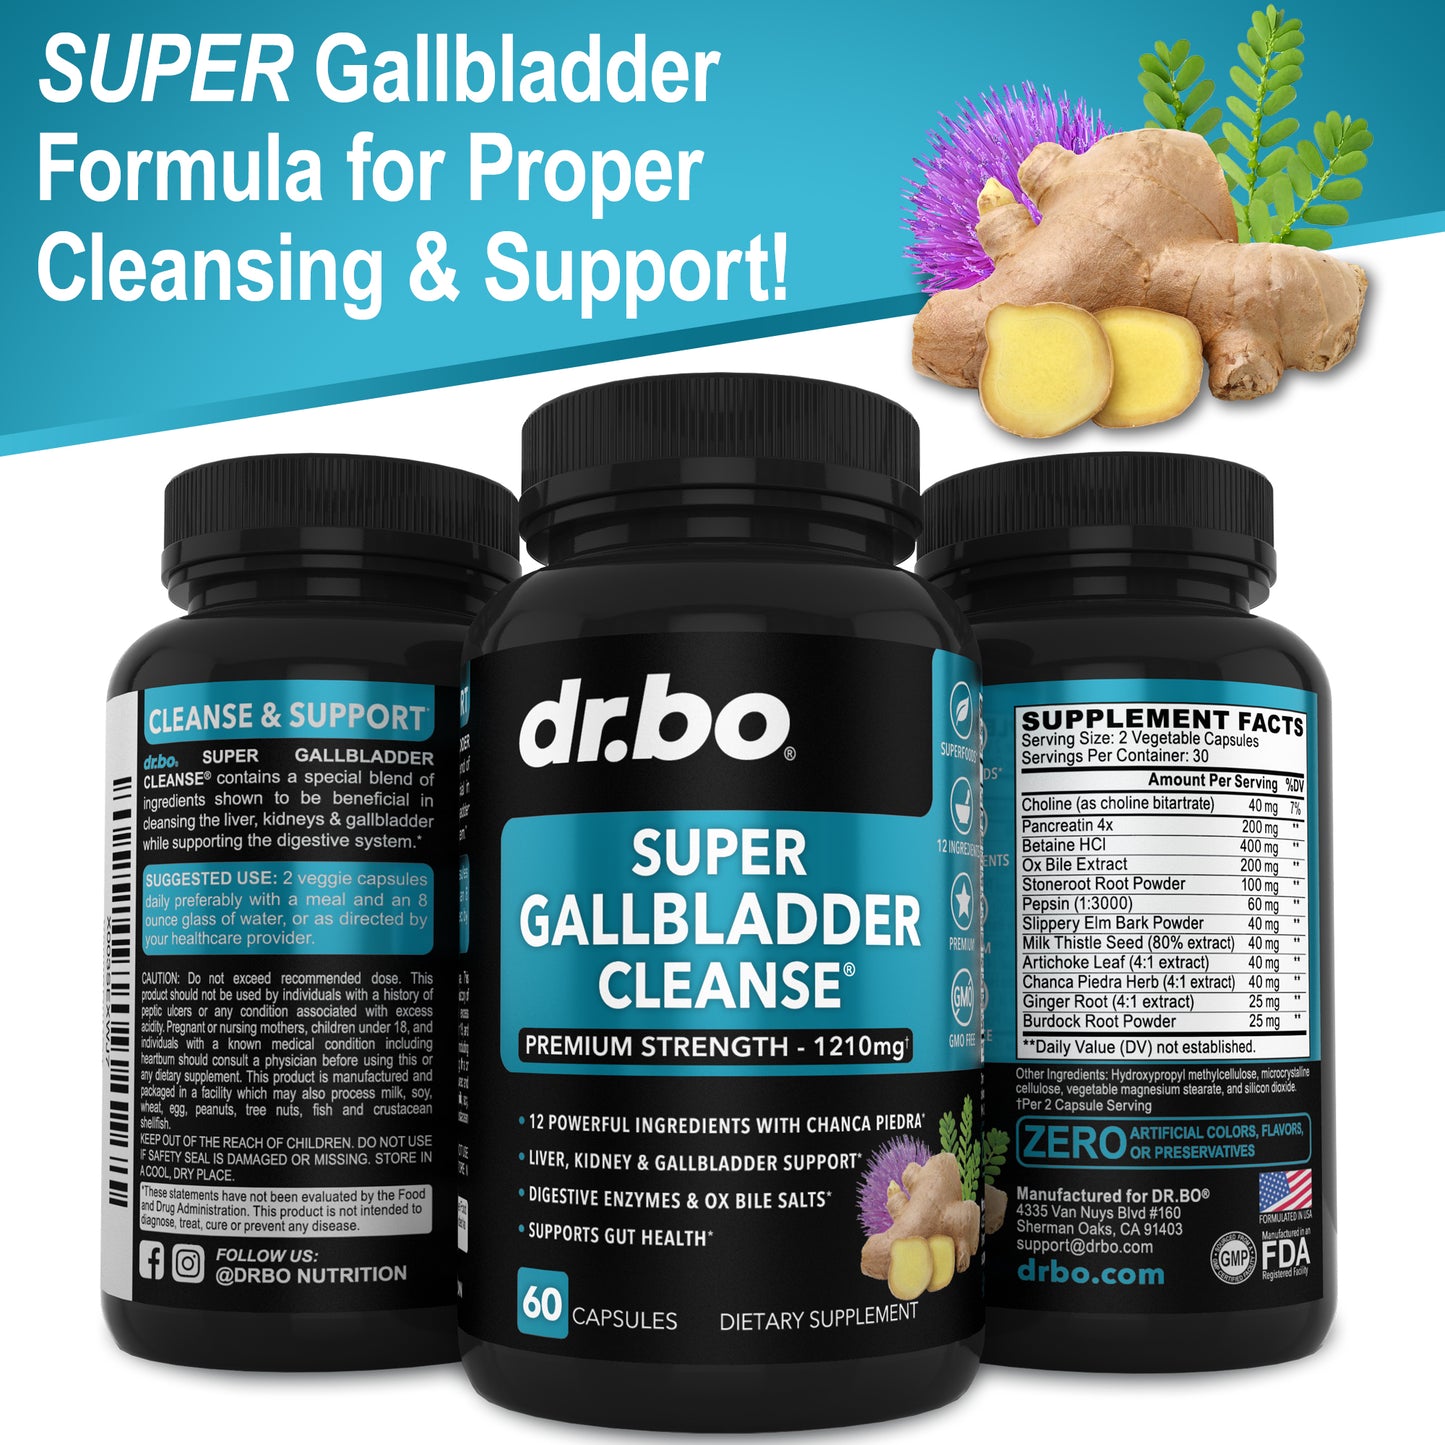 Super Gallbladder Cleanse